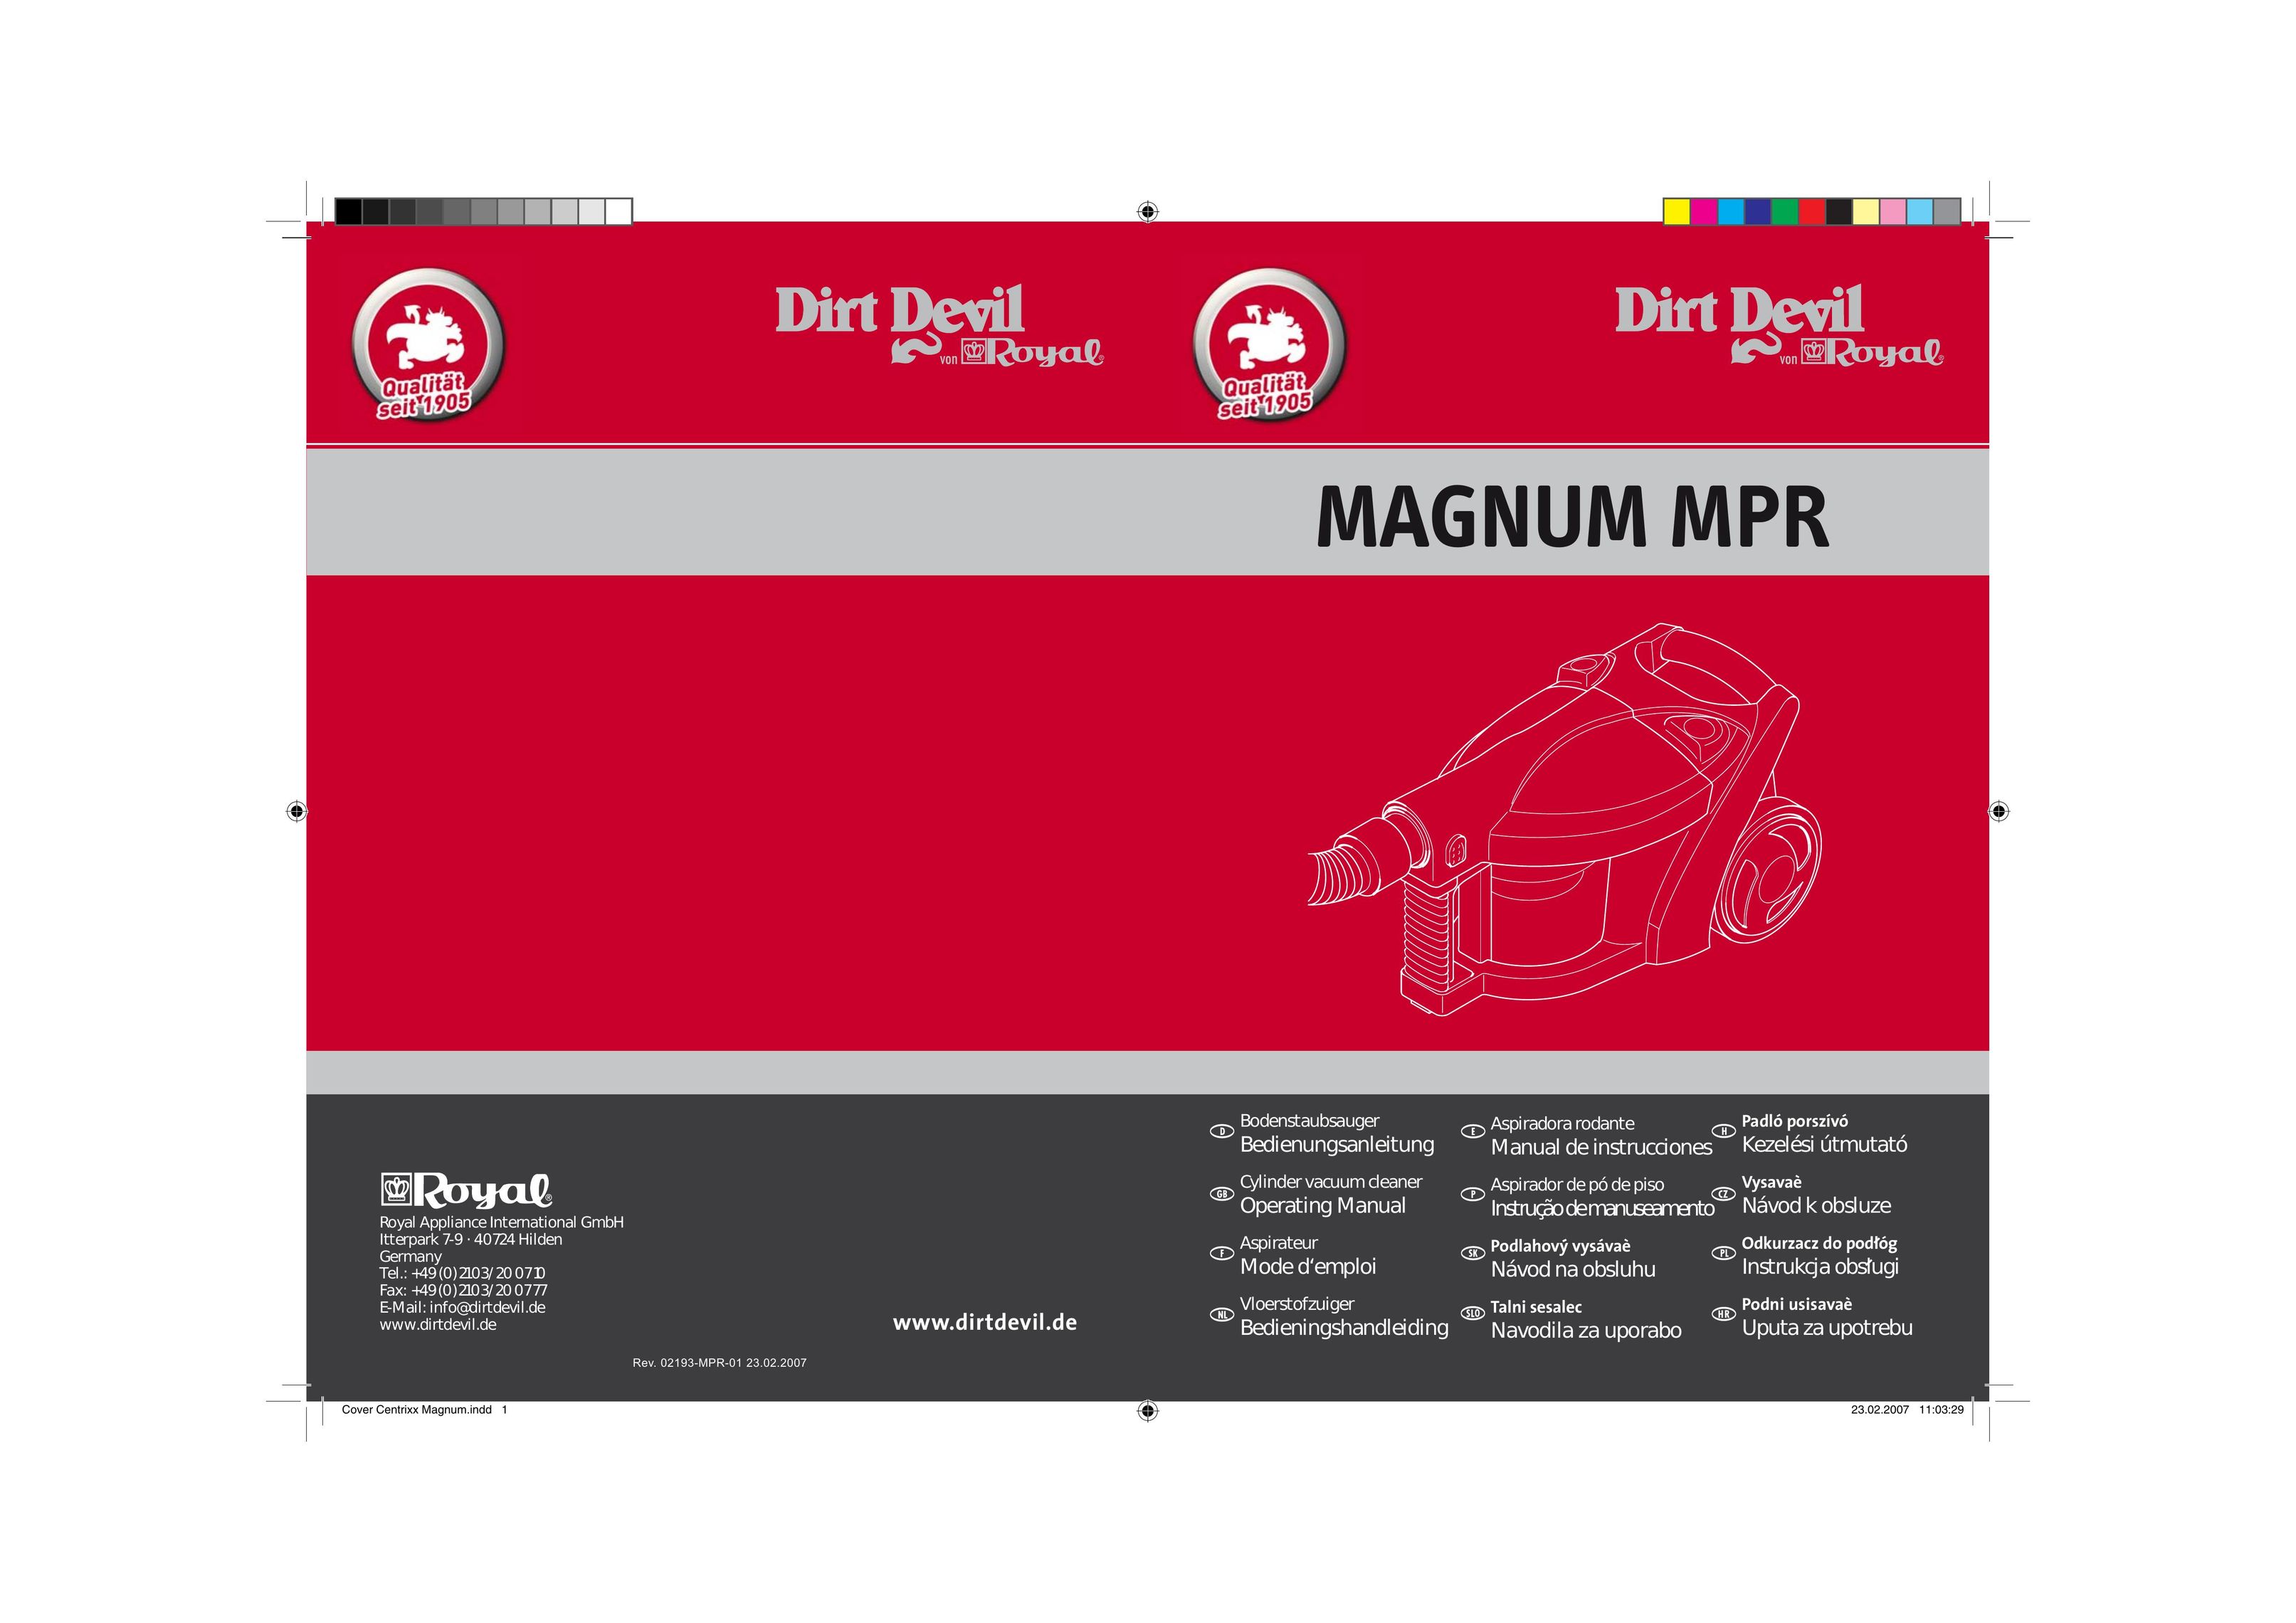 Dirt Devil MAGNUM MPR Carpet Cleaner User Manual